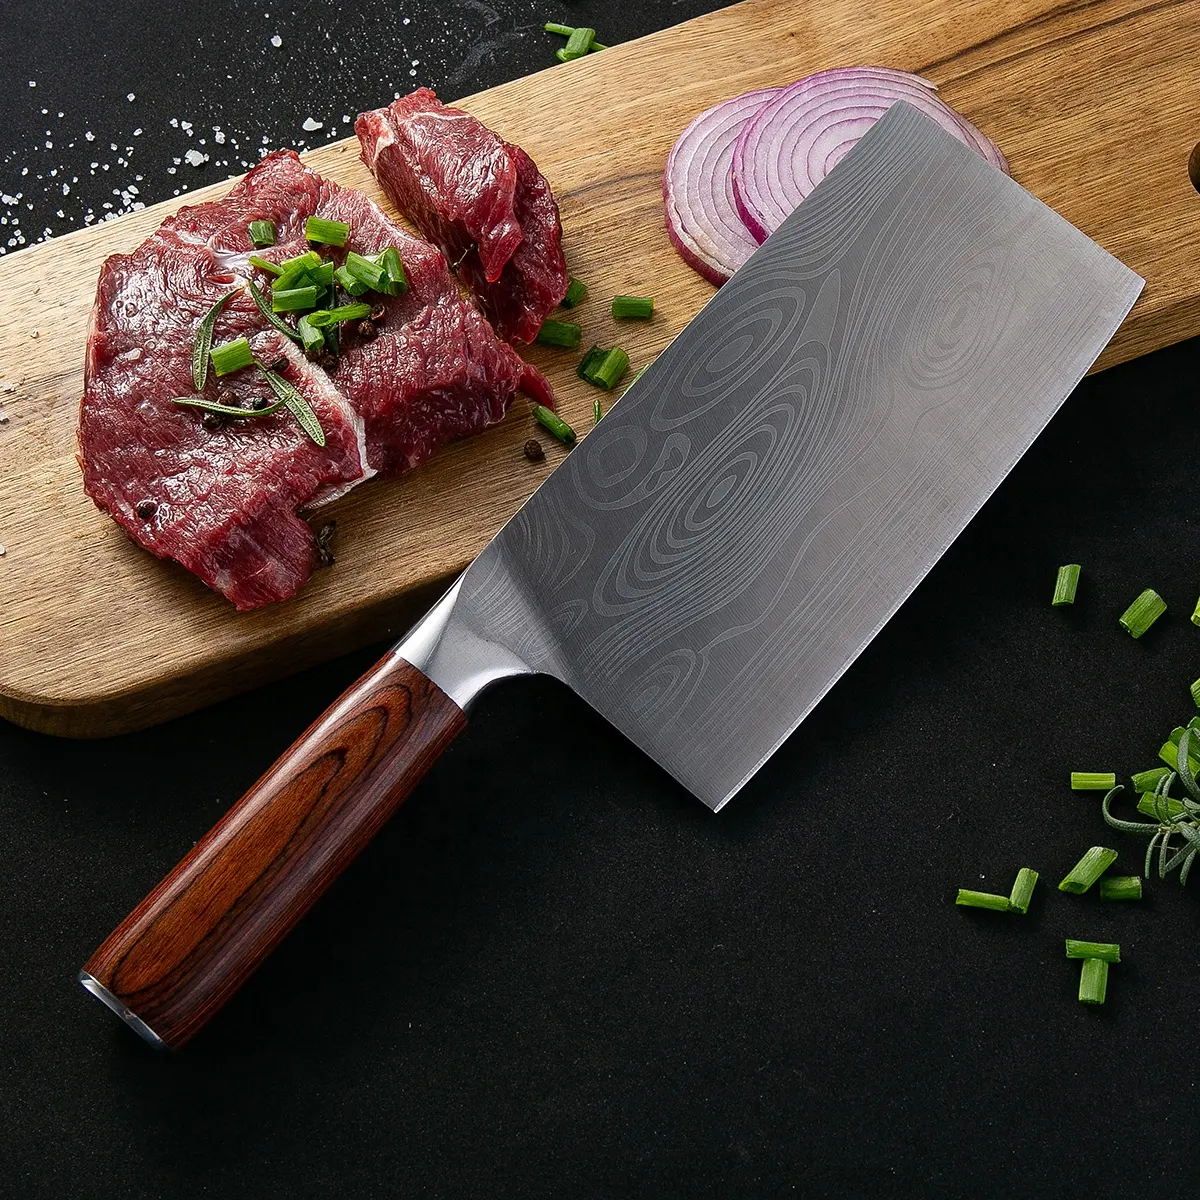 Şam desen 7 inç renkli kolu Çin mutfak bıçağı mutfak